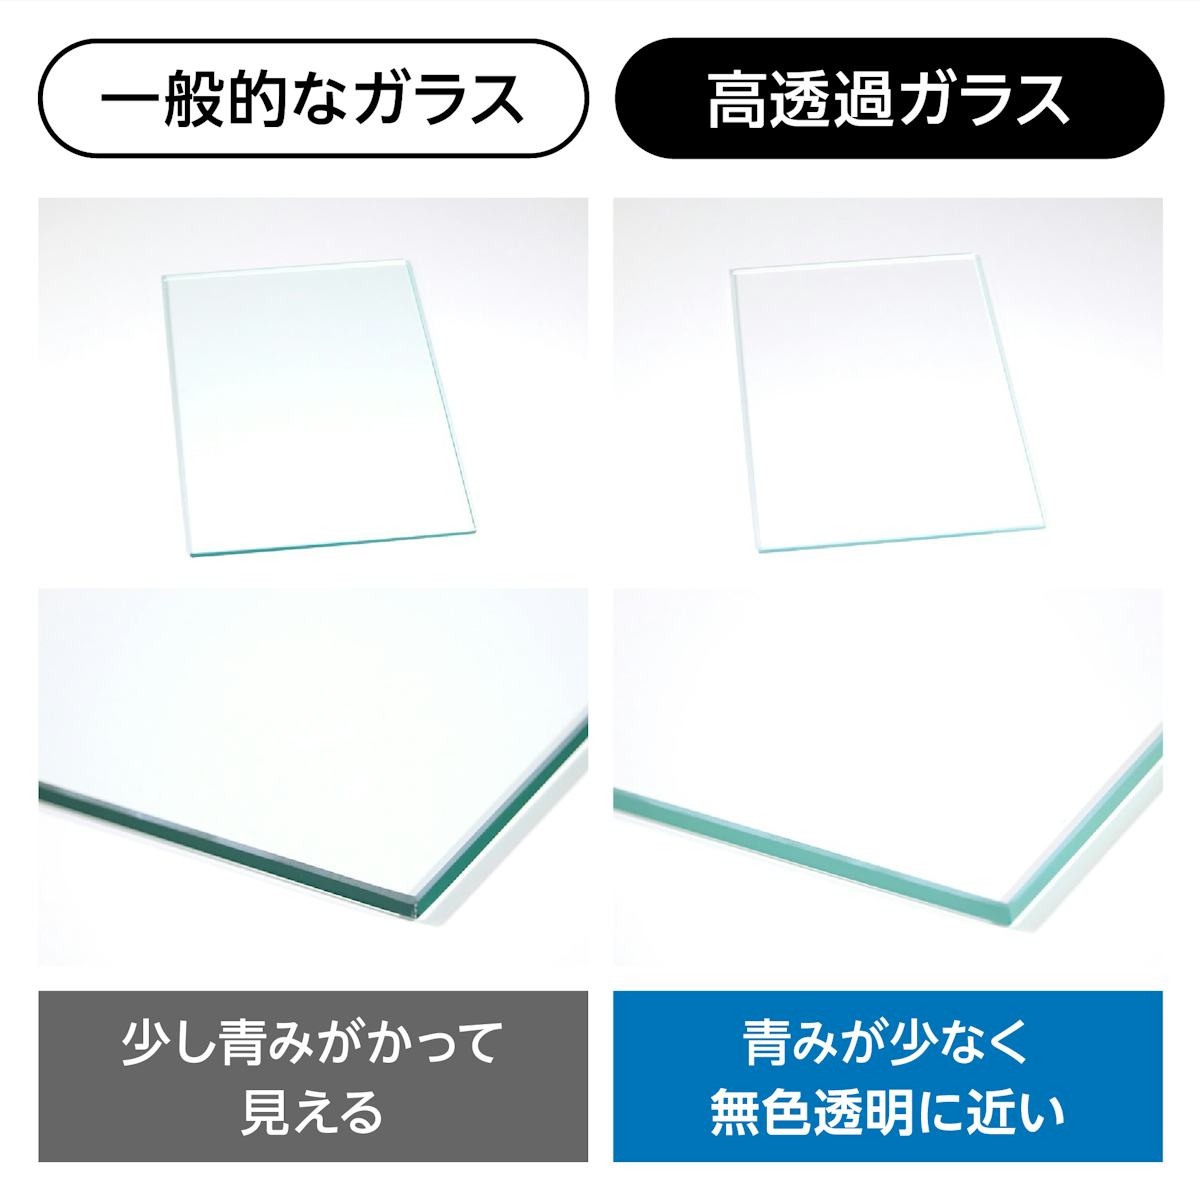 高透過ガラス - 一般的なガラスよりも青みが少ない